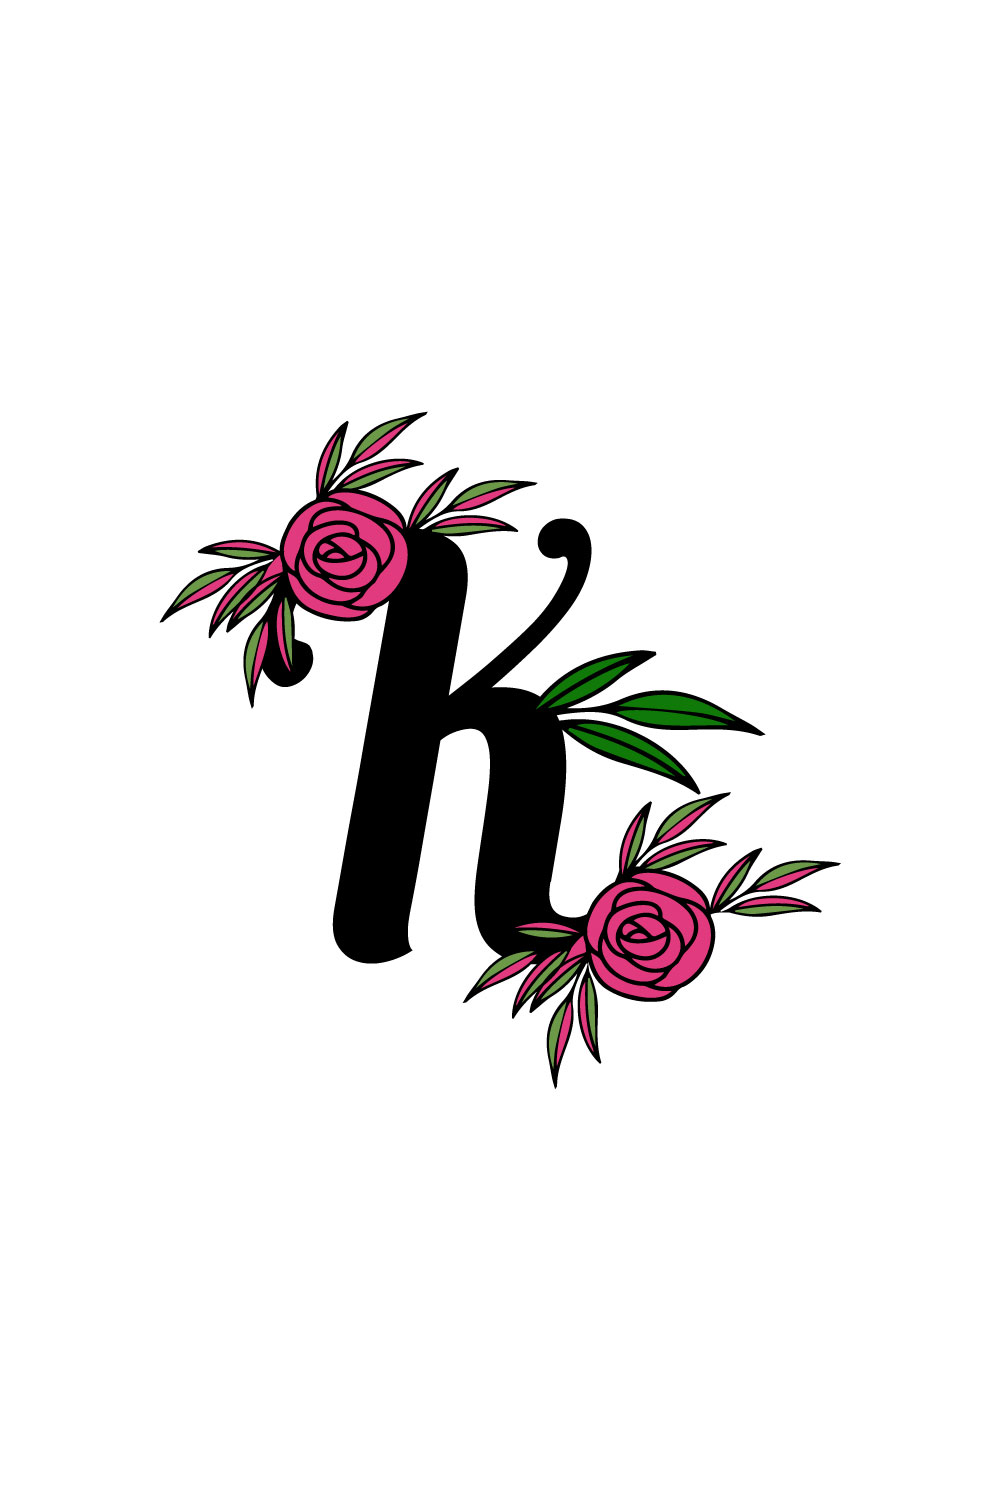 Free K leaf letter logo pinterest preview image.